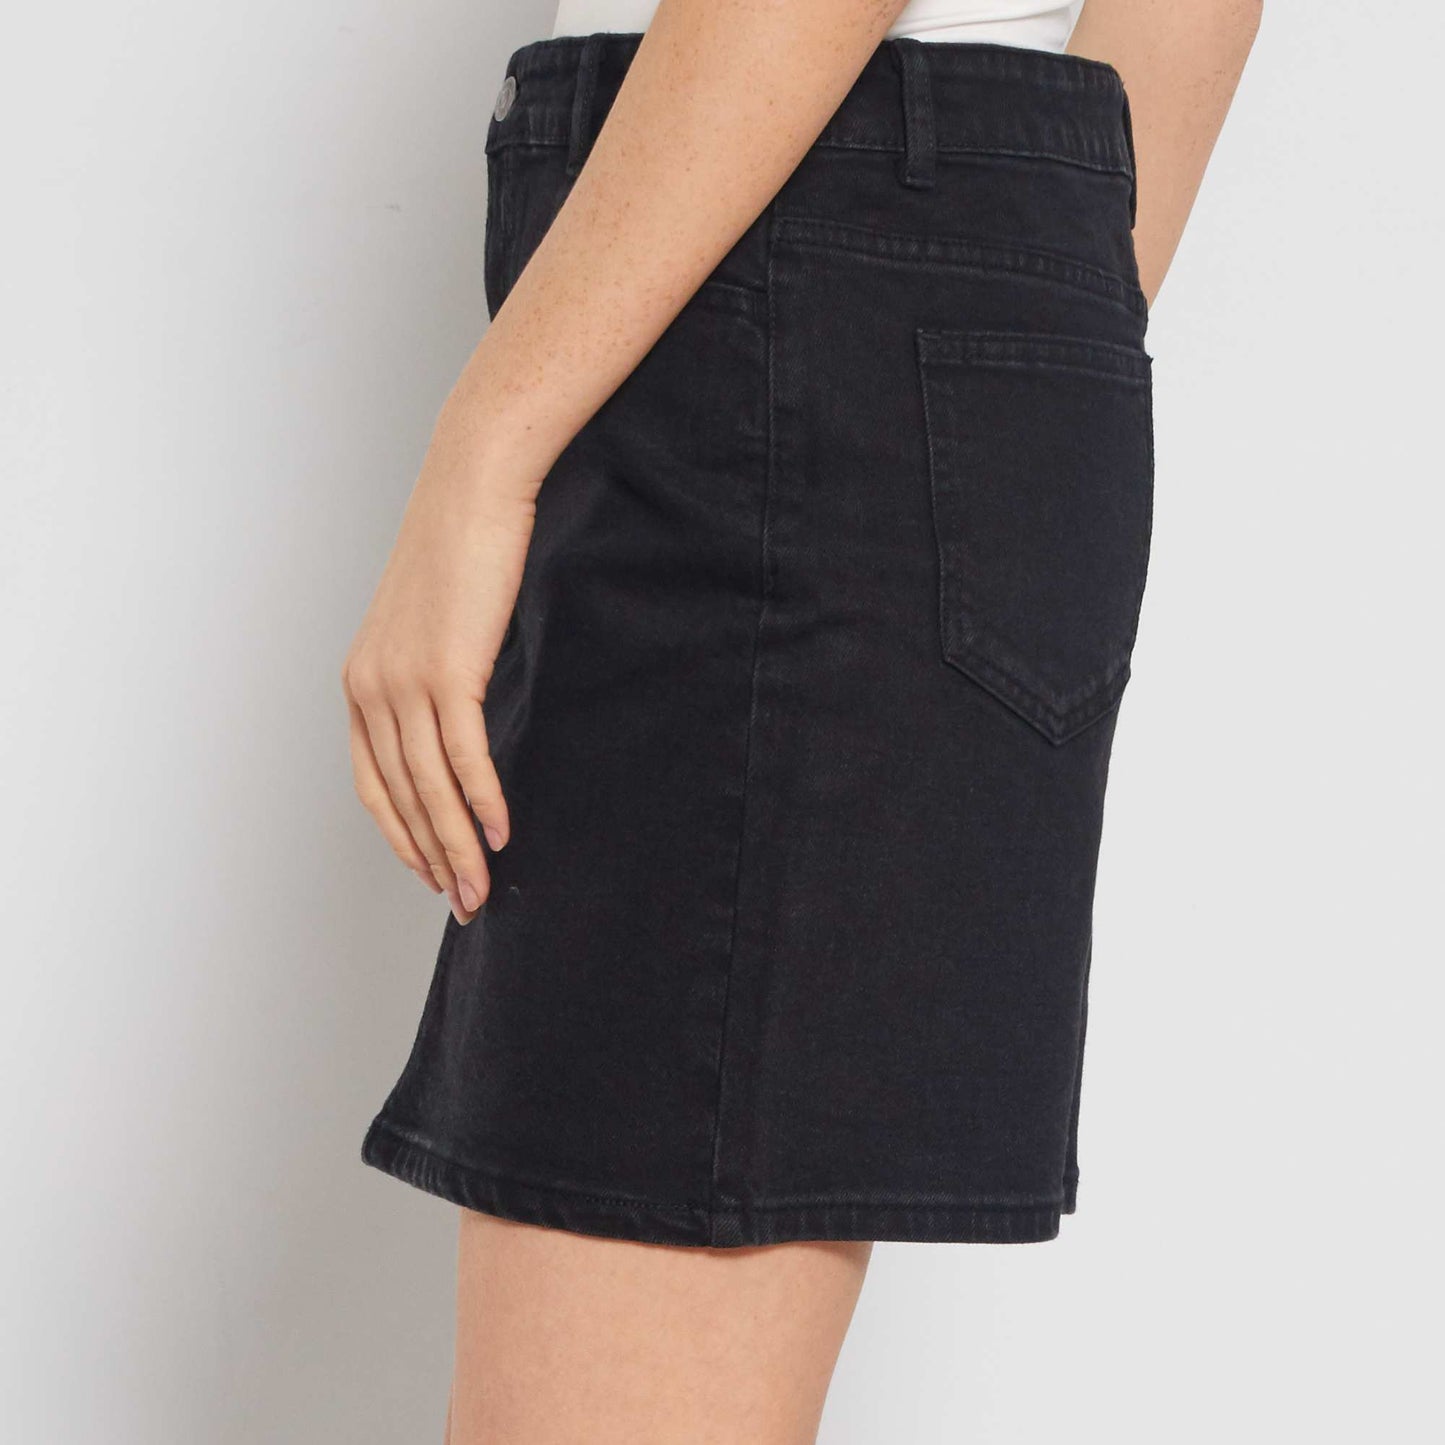 Short denim skirt Black